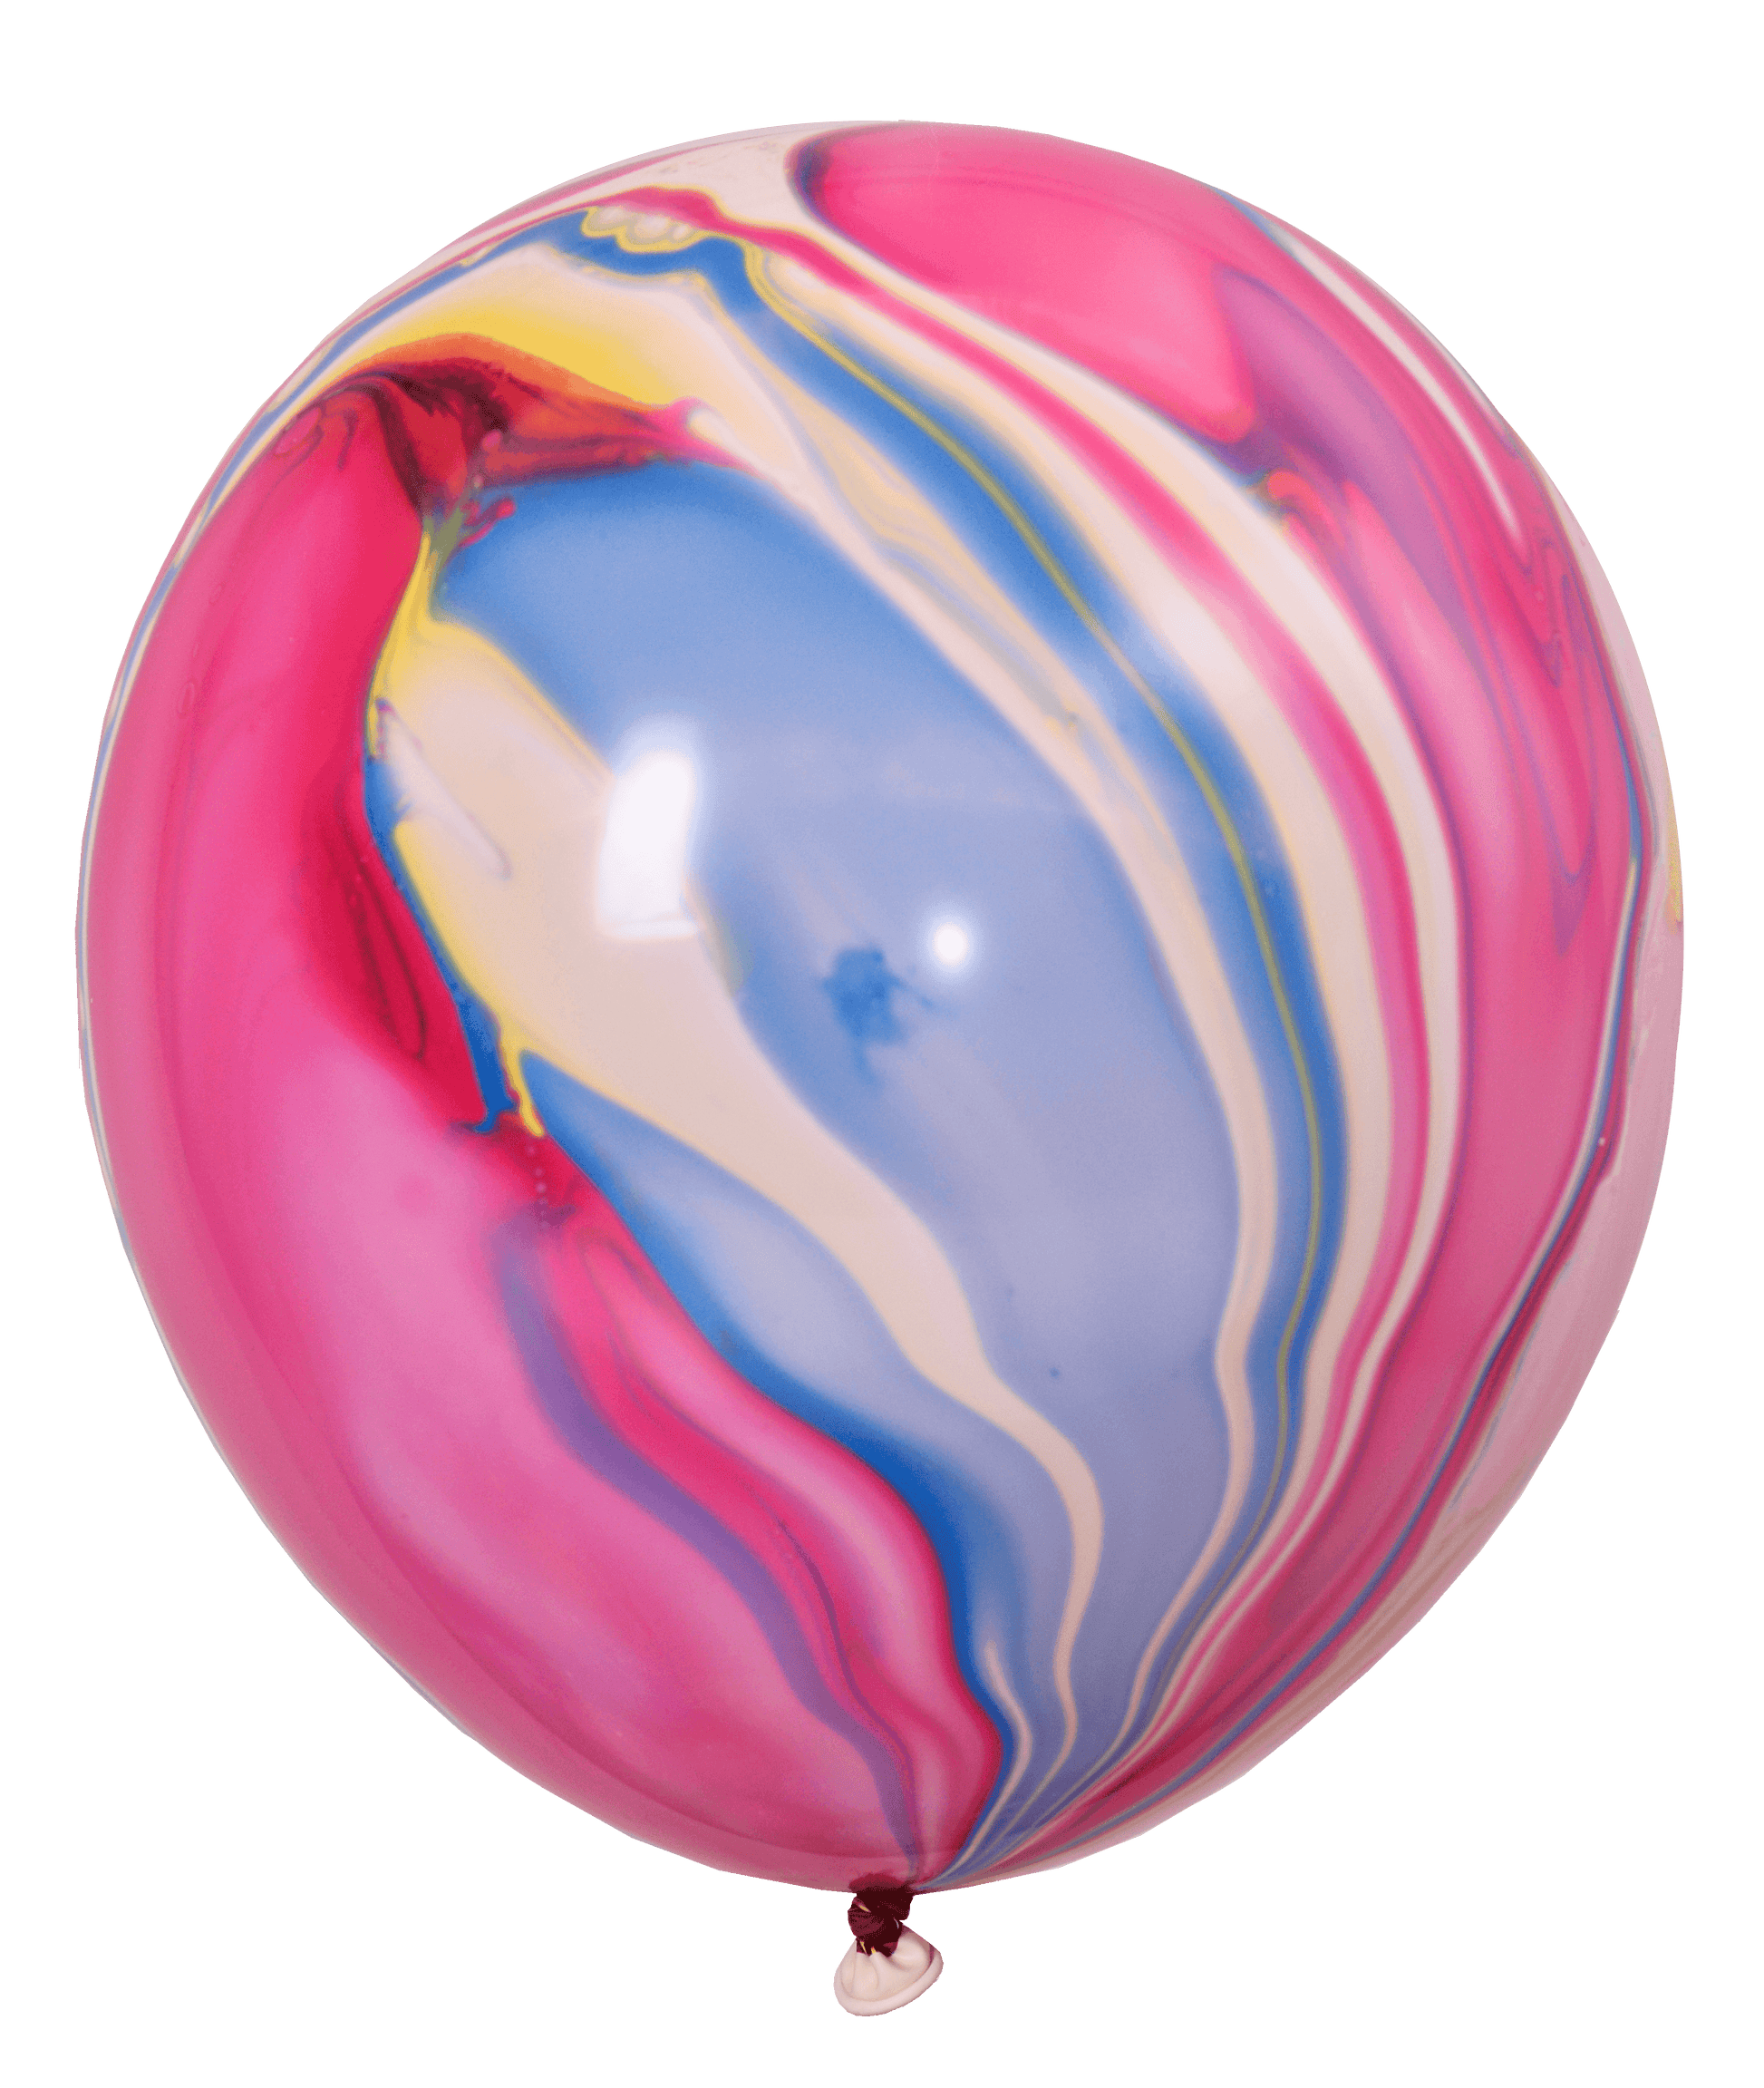 12吋大理石紋氣球印刷氣球 - MR.Balloon 氣球先生派對商城